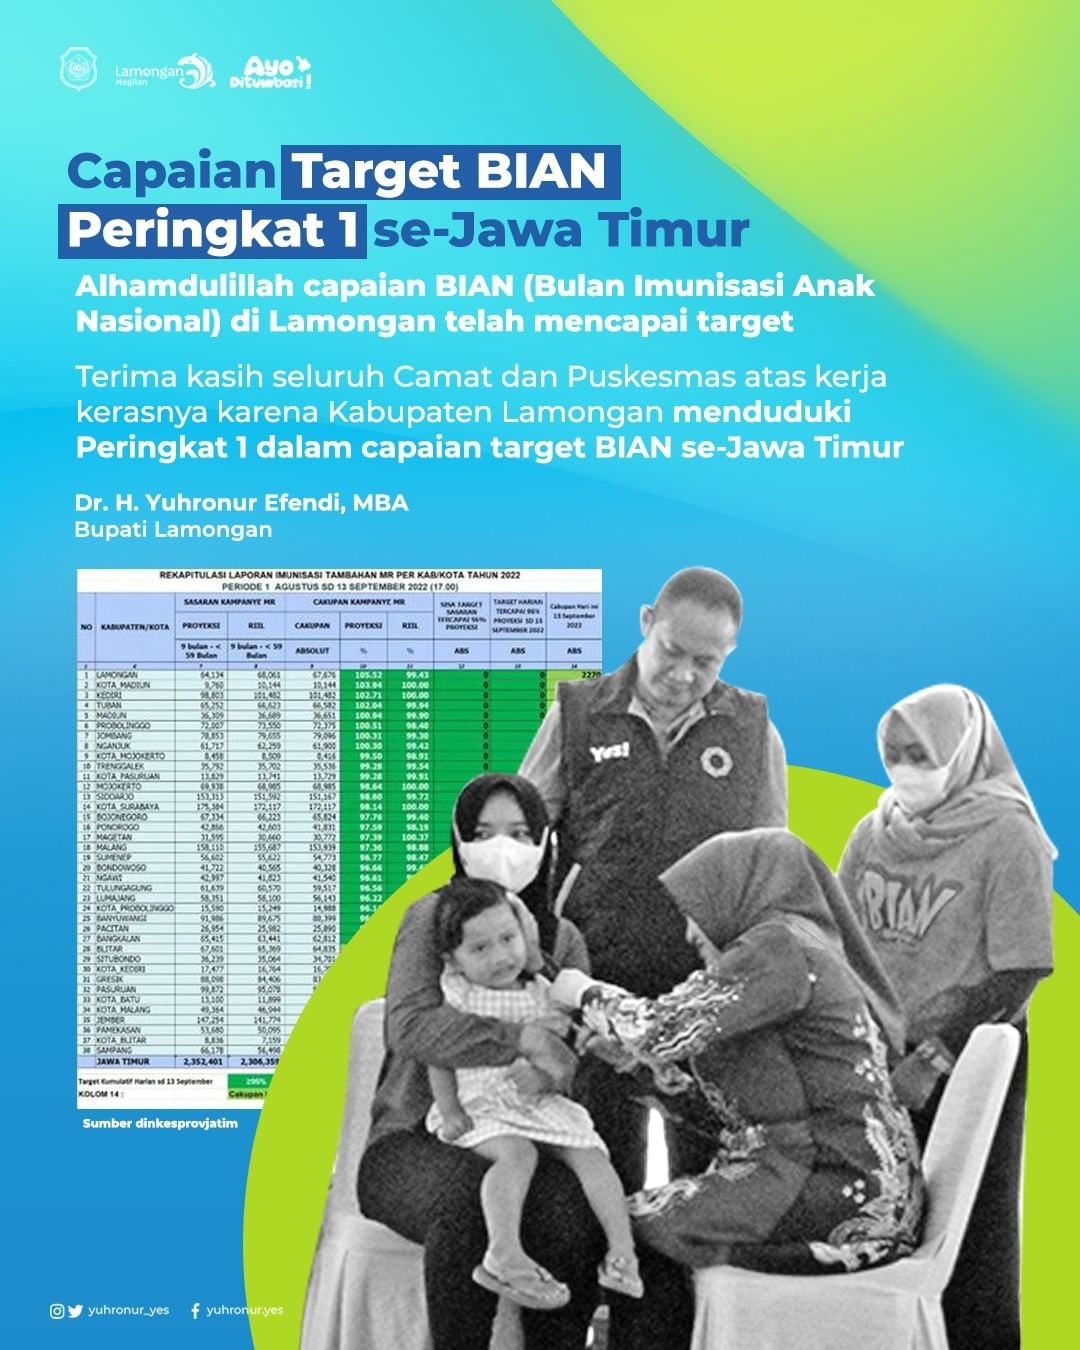 Lamongan yang telah menduduki peringkat 1 capaian target BIAN (Bulan Imunisasi Anak Nasional) se Jatim.